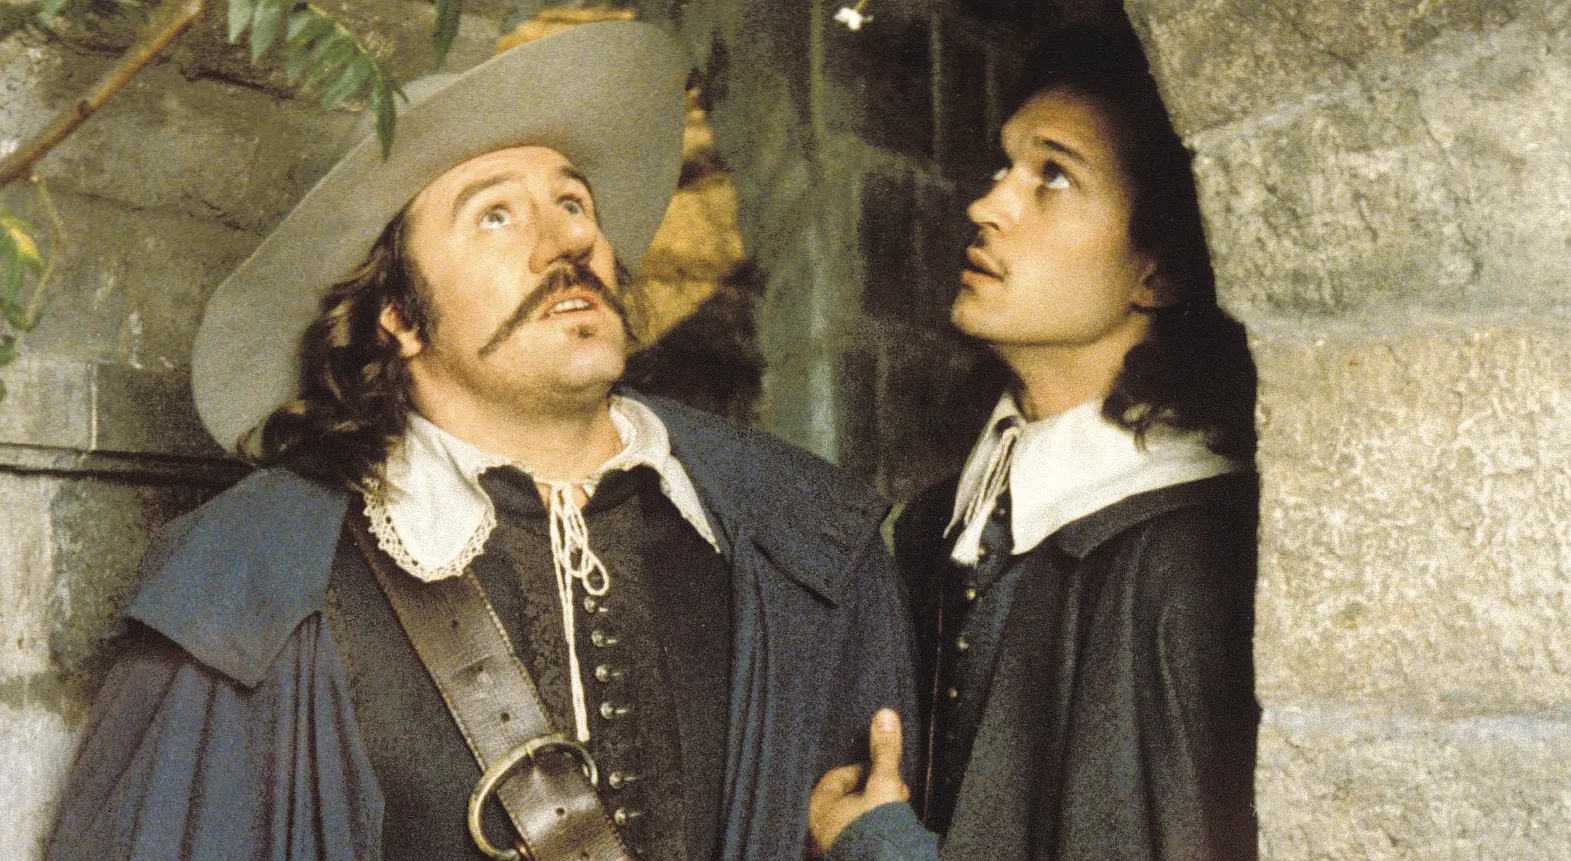 Photogramme du film réalisé par Jean-Paul Rappeneau, 1990, avec Gérard Depardieu (Cyrano) et Vincent Perez (Christian).